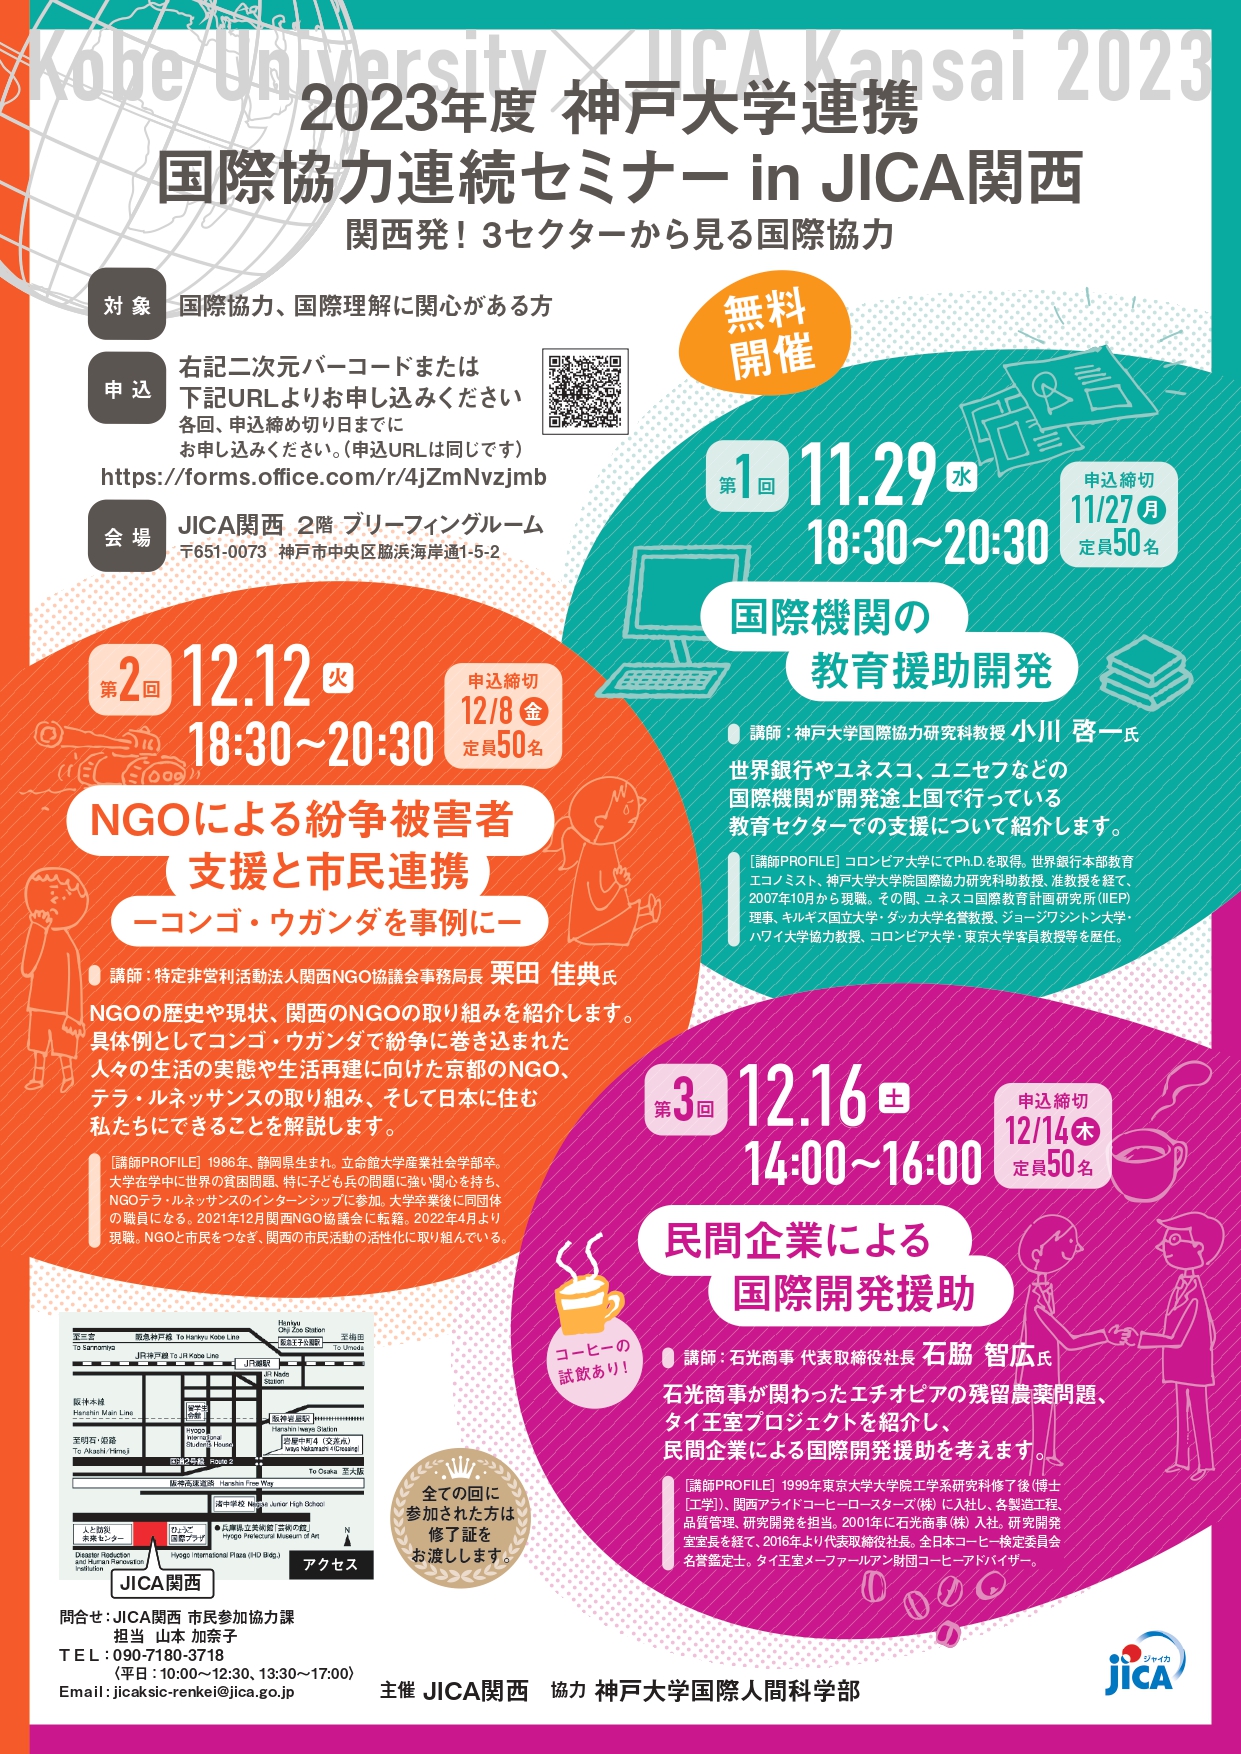 12/12 2023年度神戸大学連携 国際協力セミナー in JICA関西